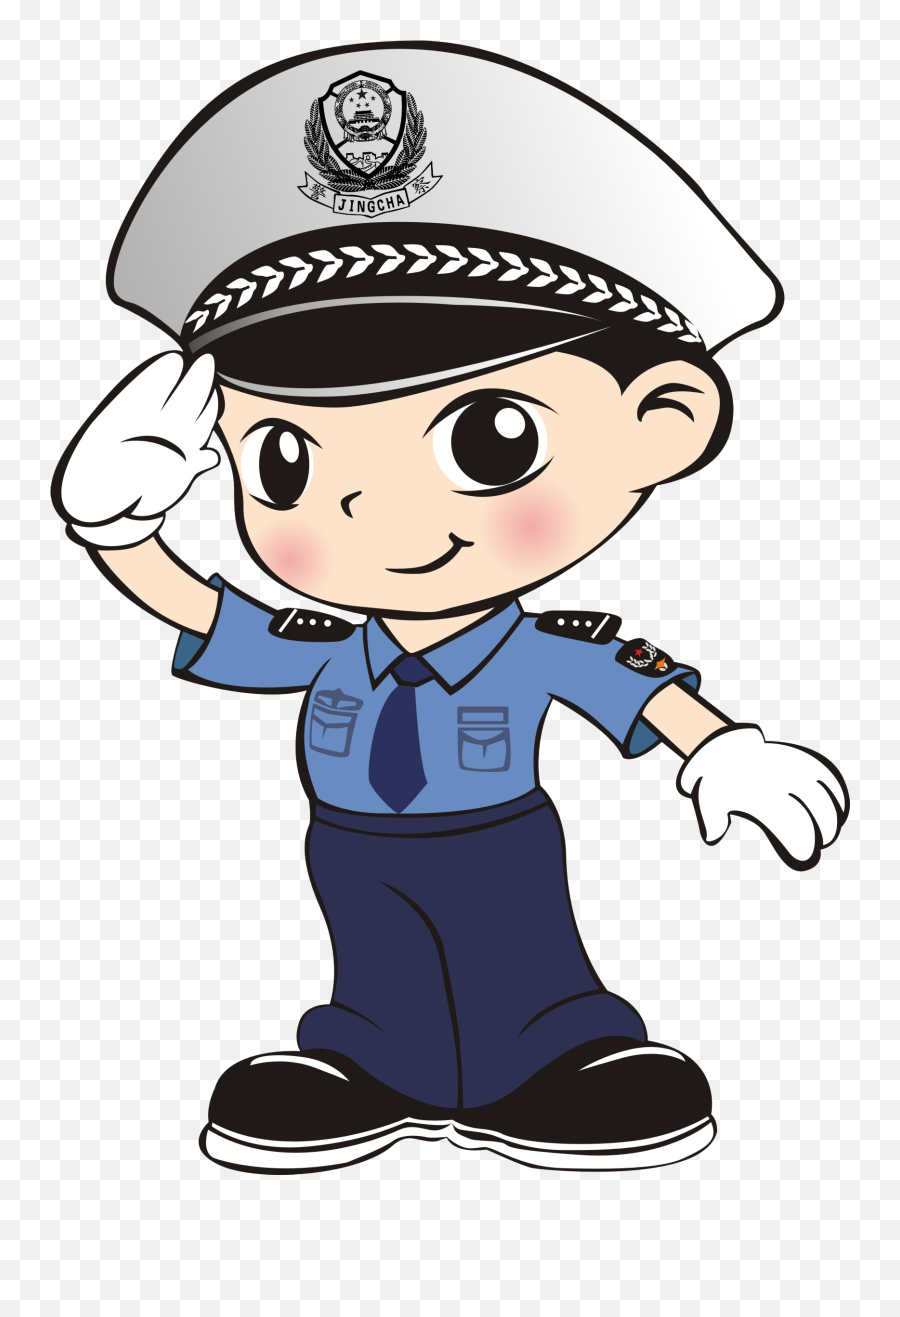 Q - Police Salute Clip Art Salute Clipart Emoji,Unicode Military Salute Emoji